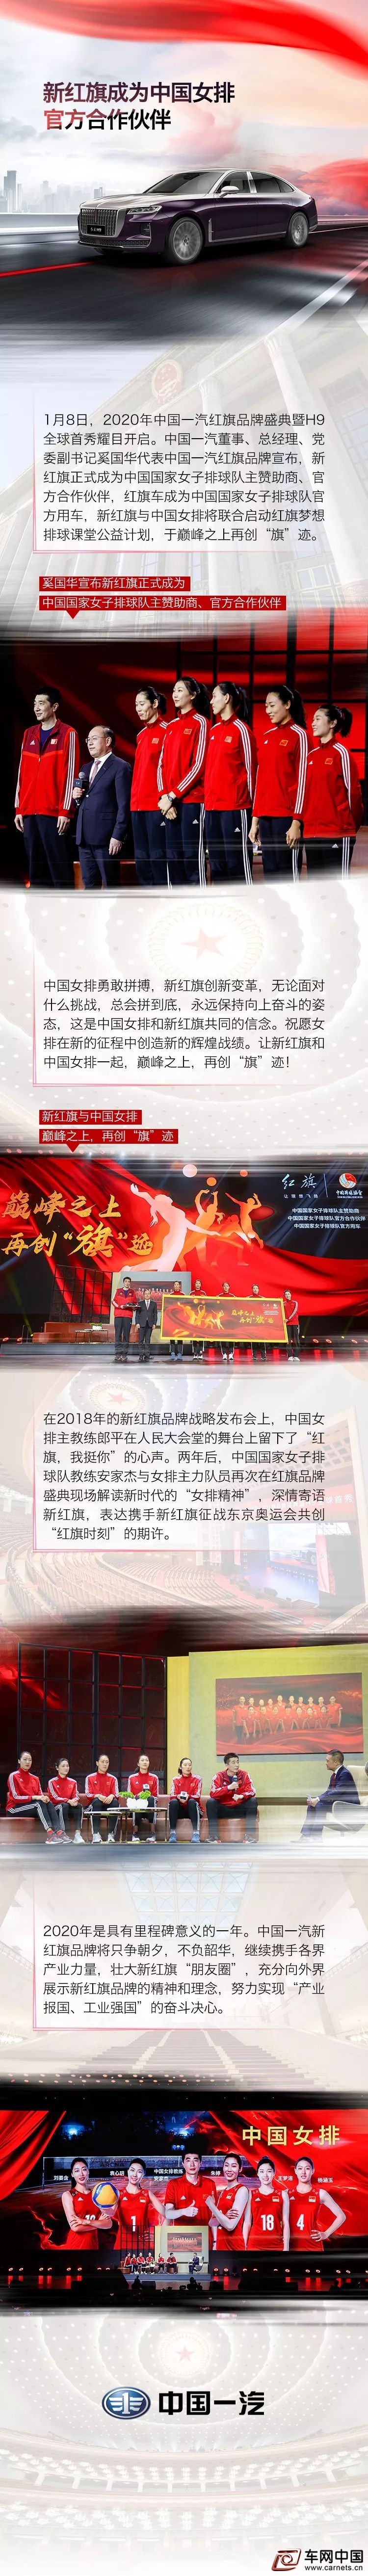 新红旗成为中国女排官方合作伙伴 